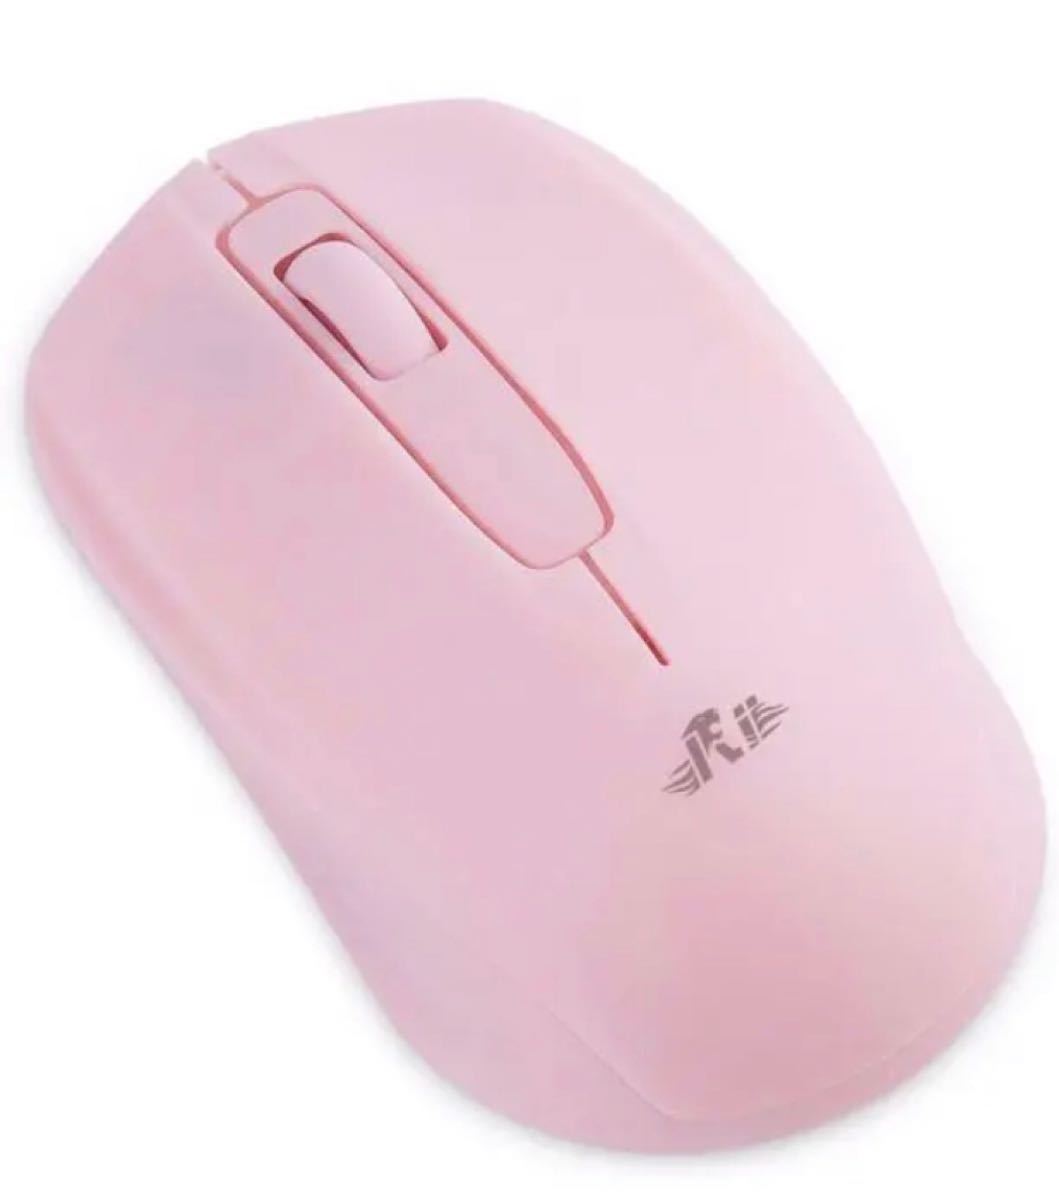 マウスワイヤレス 小型 無線マウス 電池式 2.4GHz 1000DPI 付属ワイヤレスマウス USBレシーバ PC用